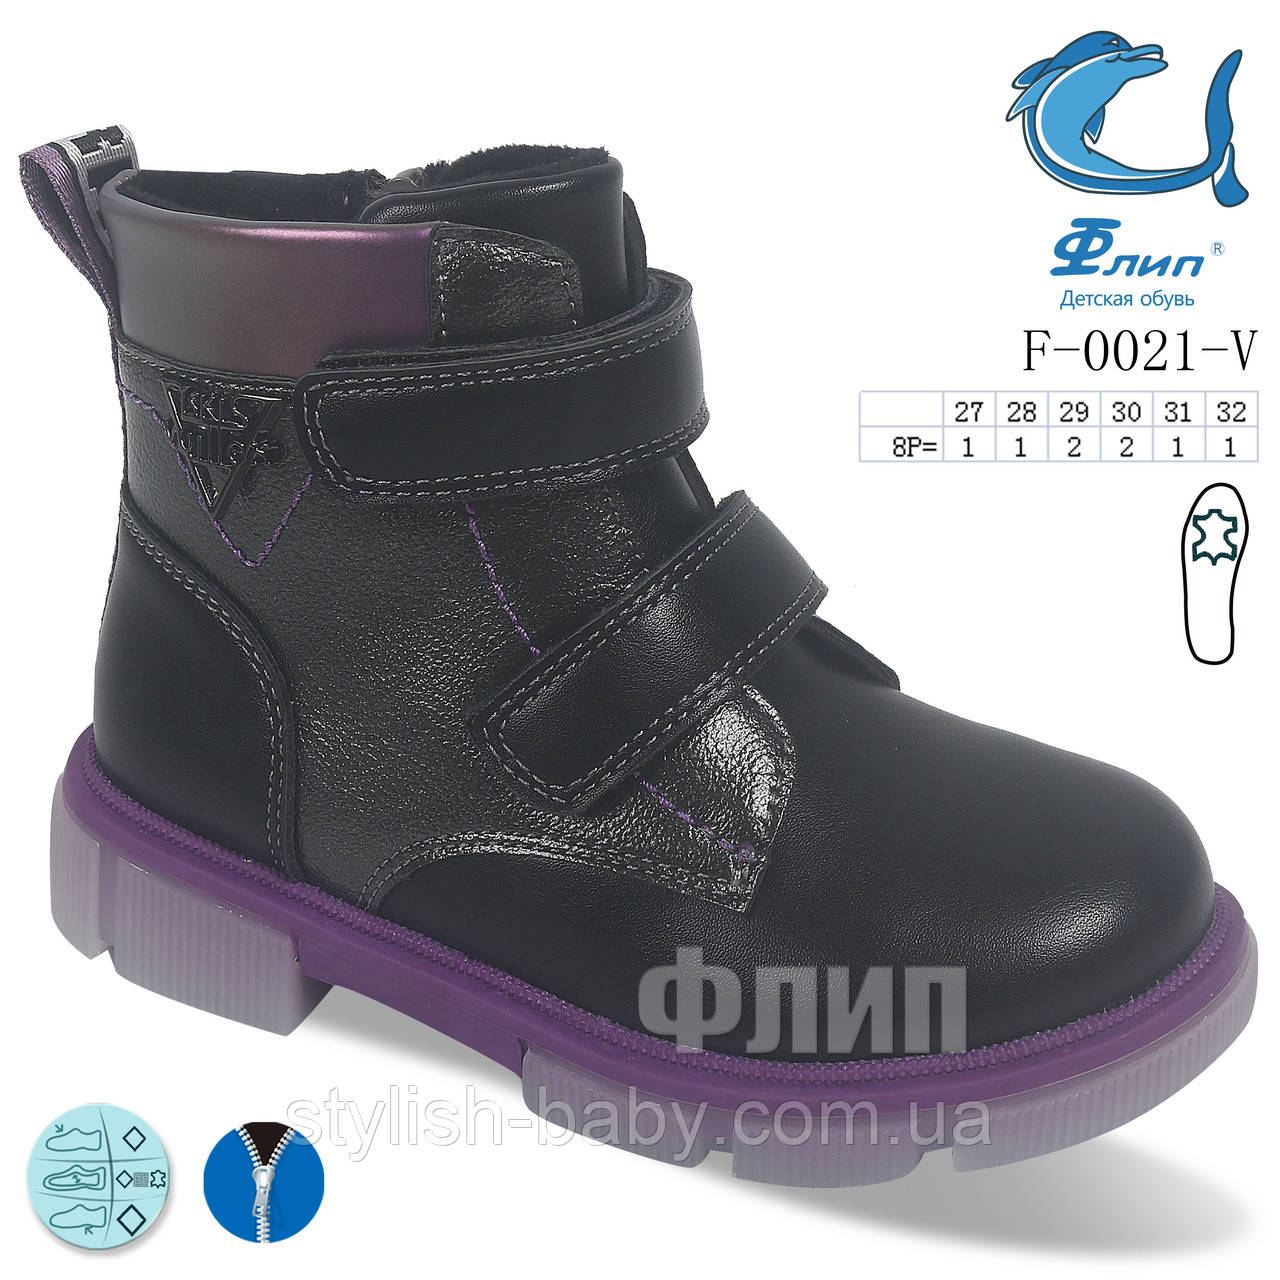 Детская обувь оптом. Детская демисезонная обувь 2022 бренда Tom.m - Flip для девочек (рр. с 27 по 32)